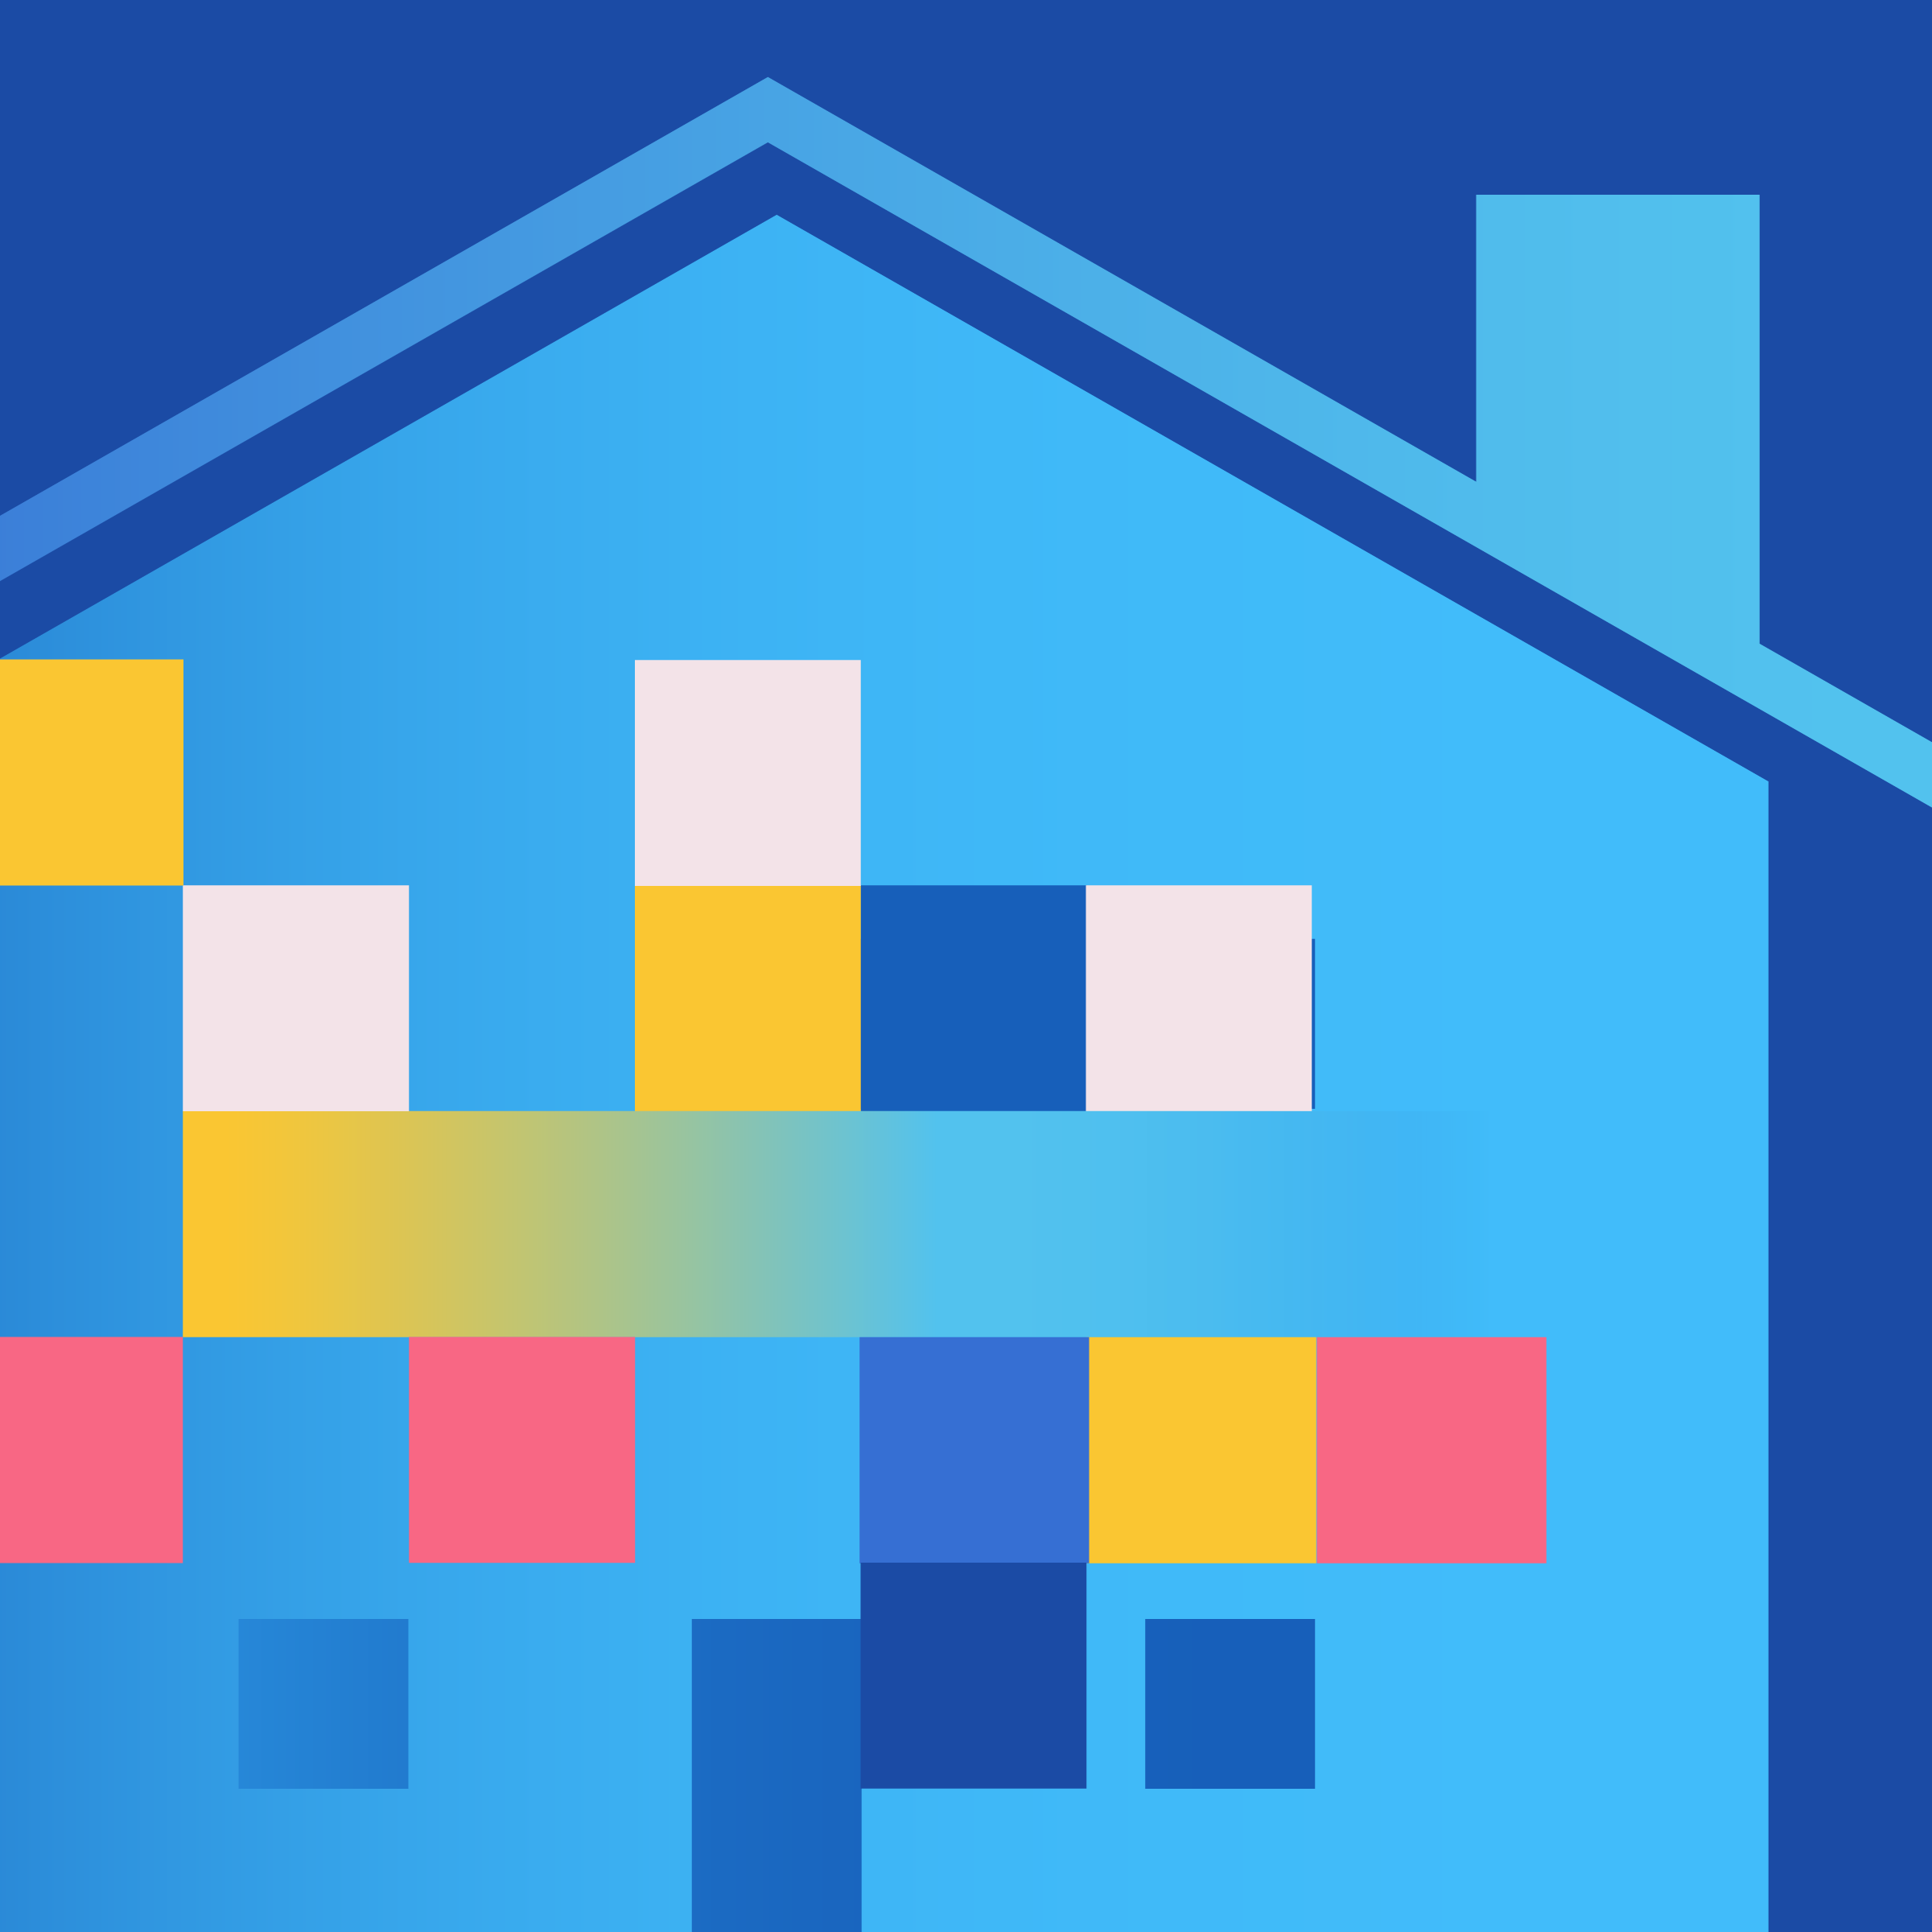 House pixelated illustration